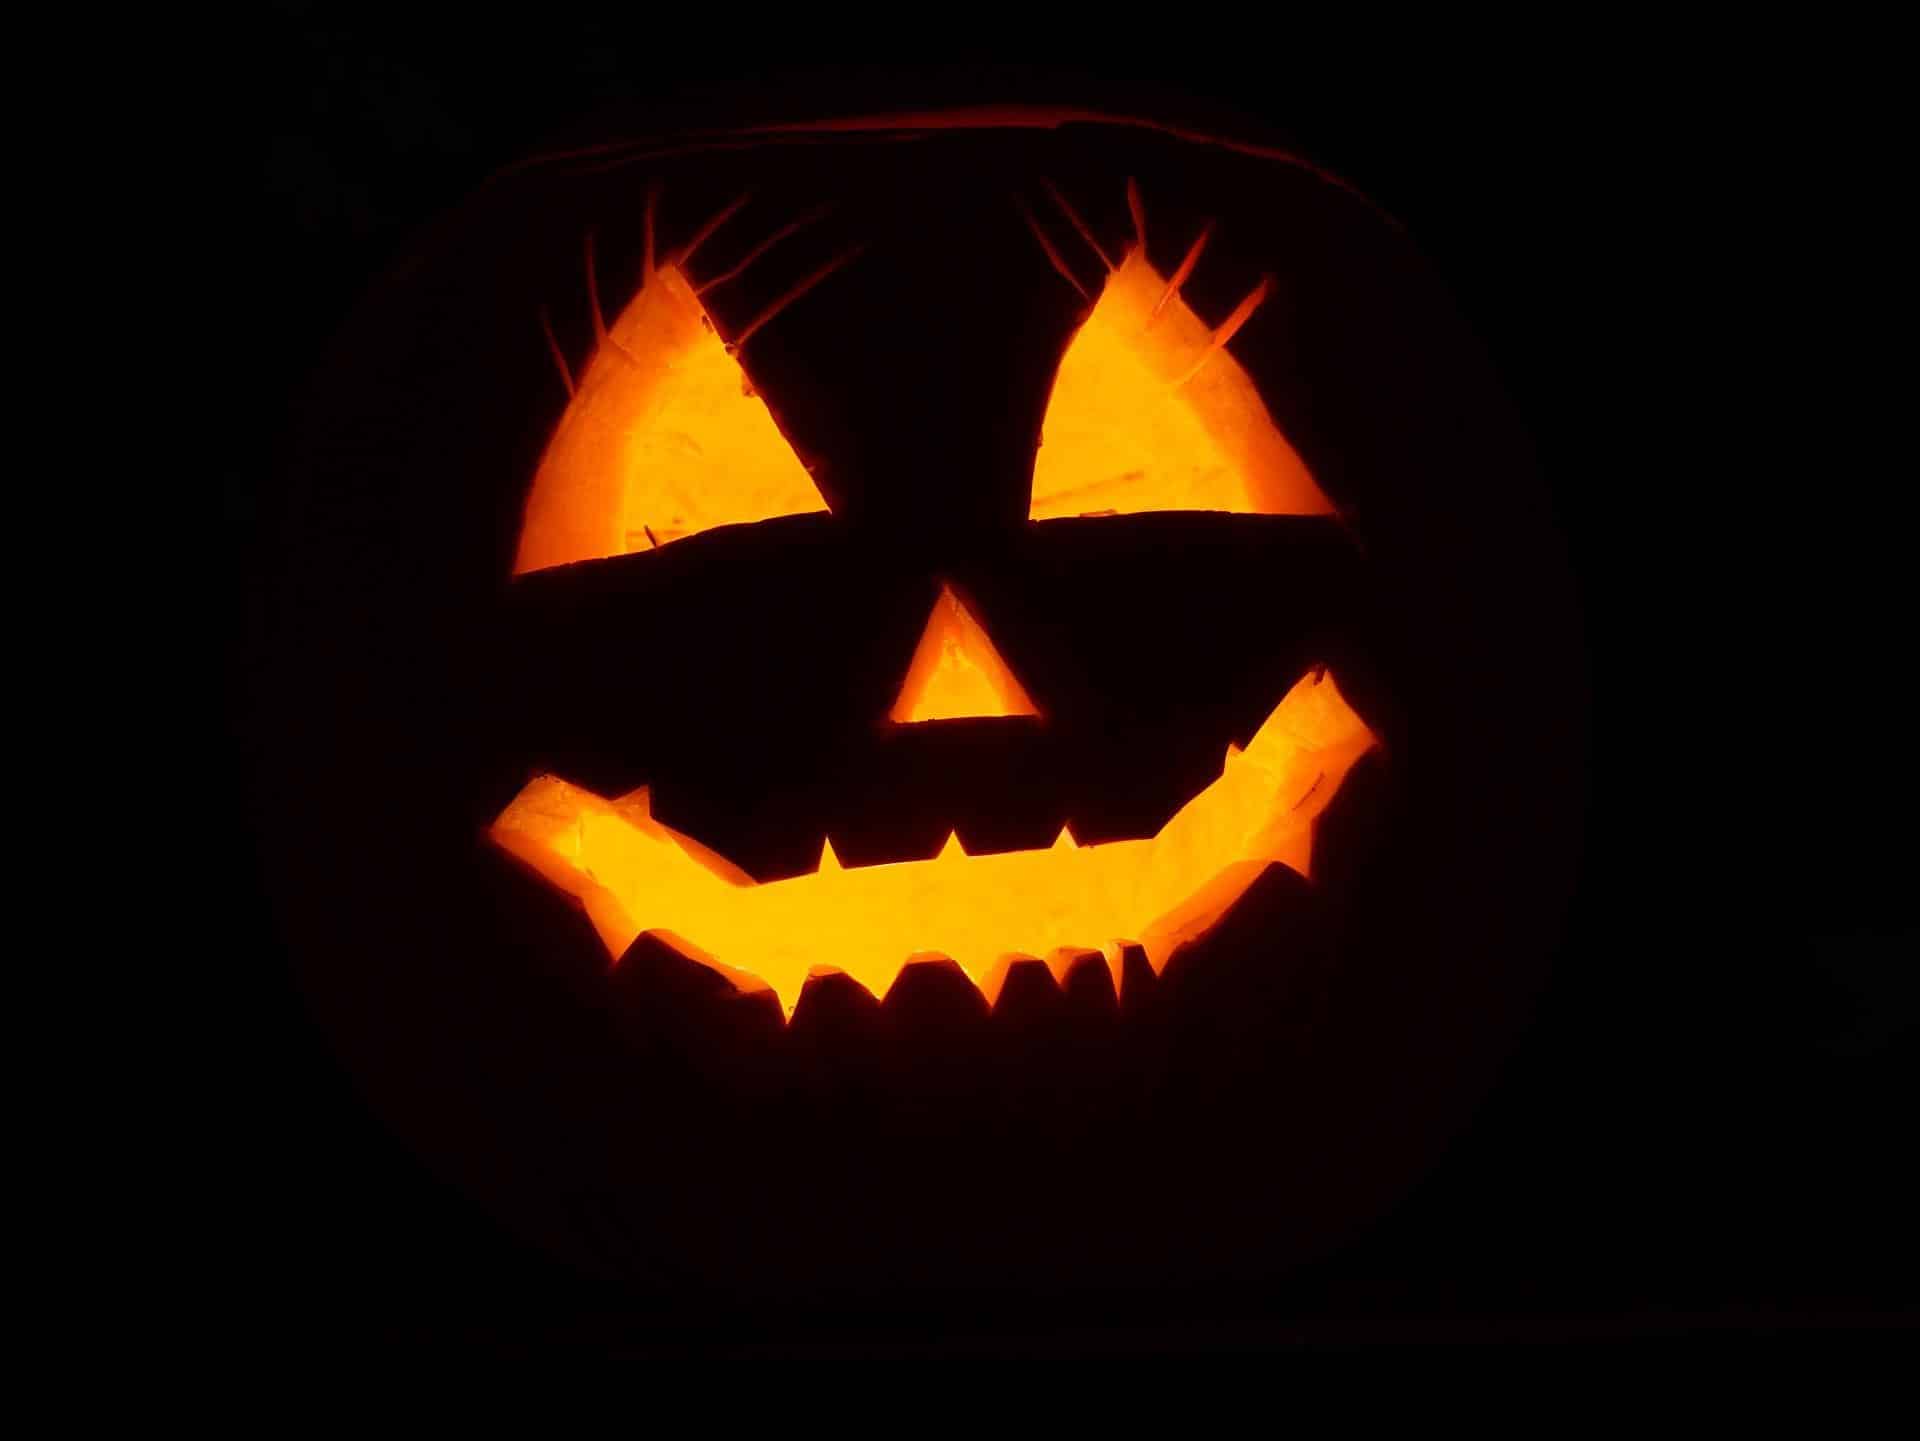 Déguisement Chat Noir Enfant Halloween - Kit 3 Pièces Rubie's